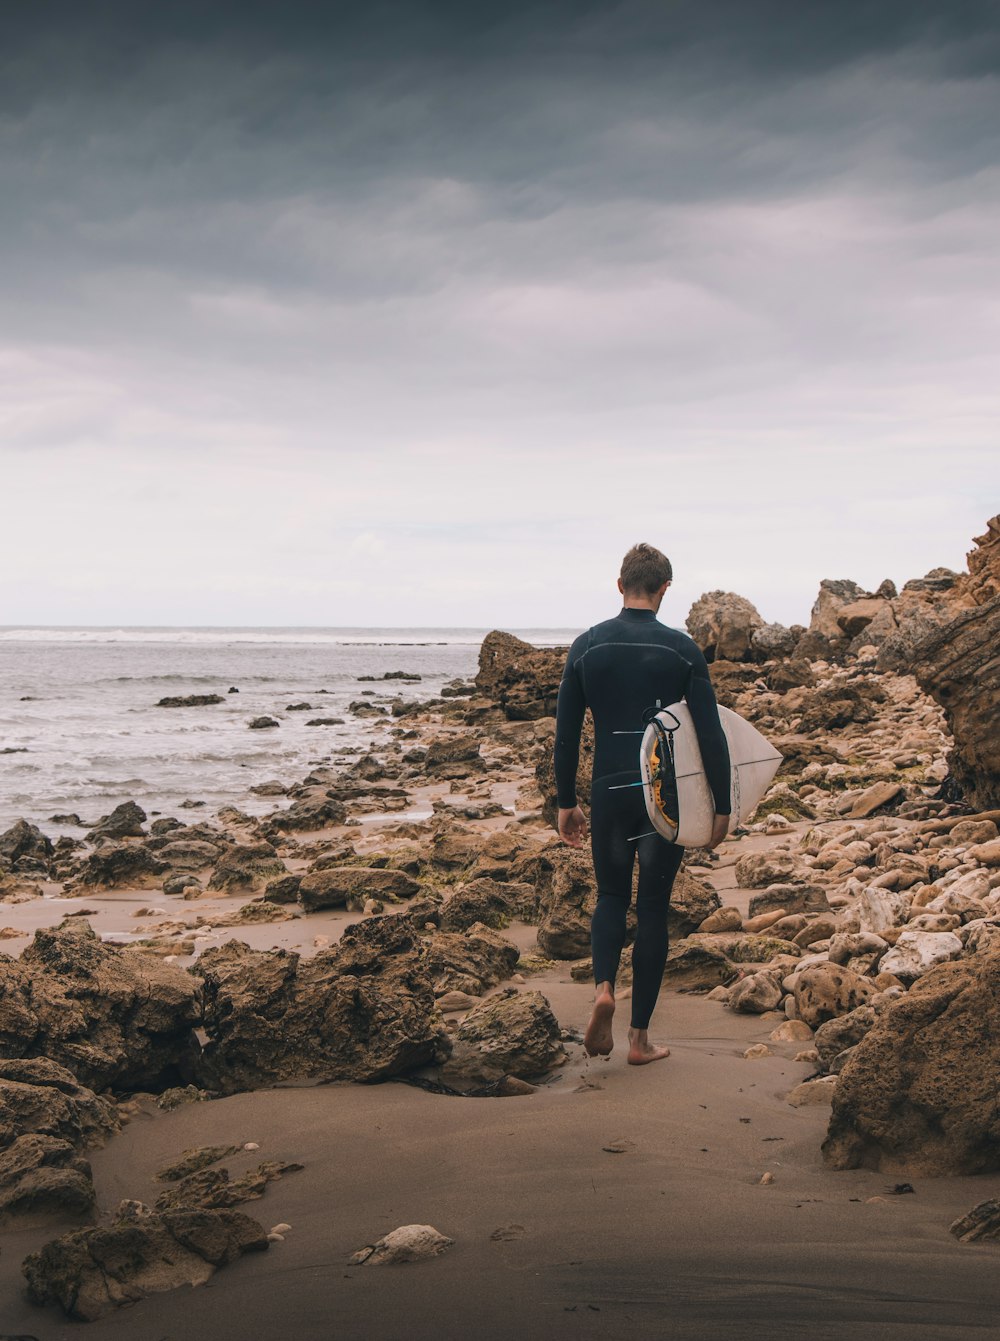 Un hombre con traje de neopreno cargando una tabla de surf en una playa rocosa